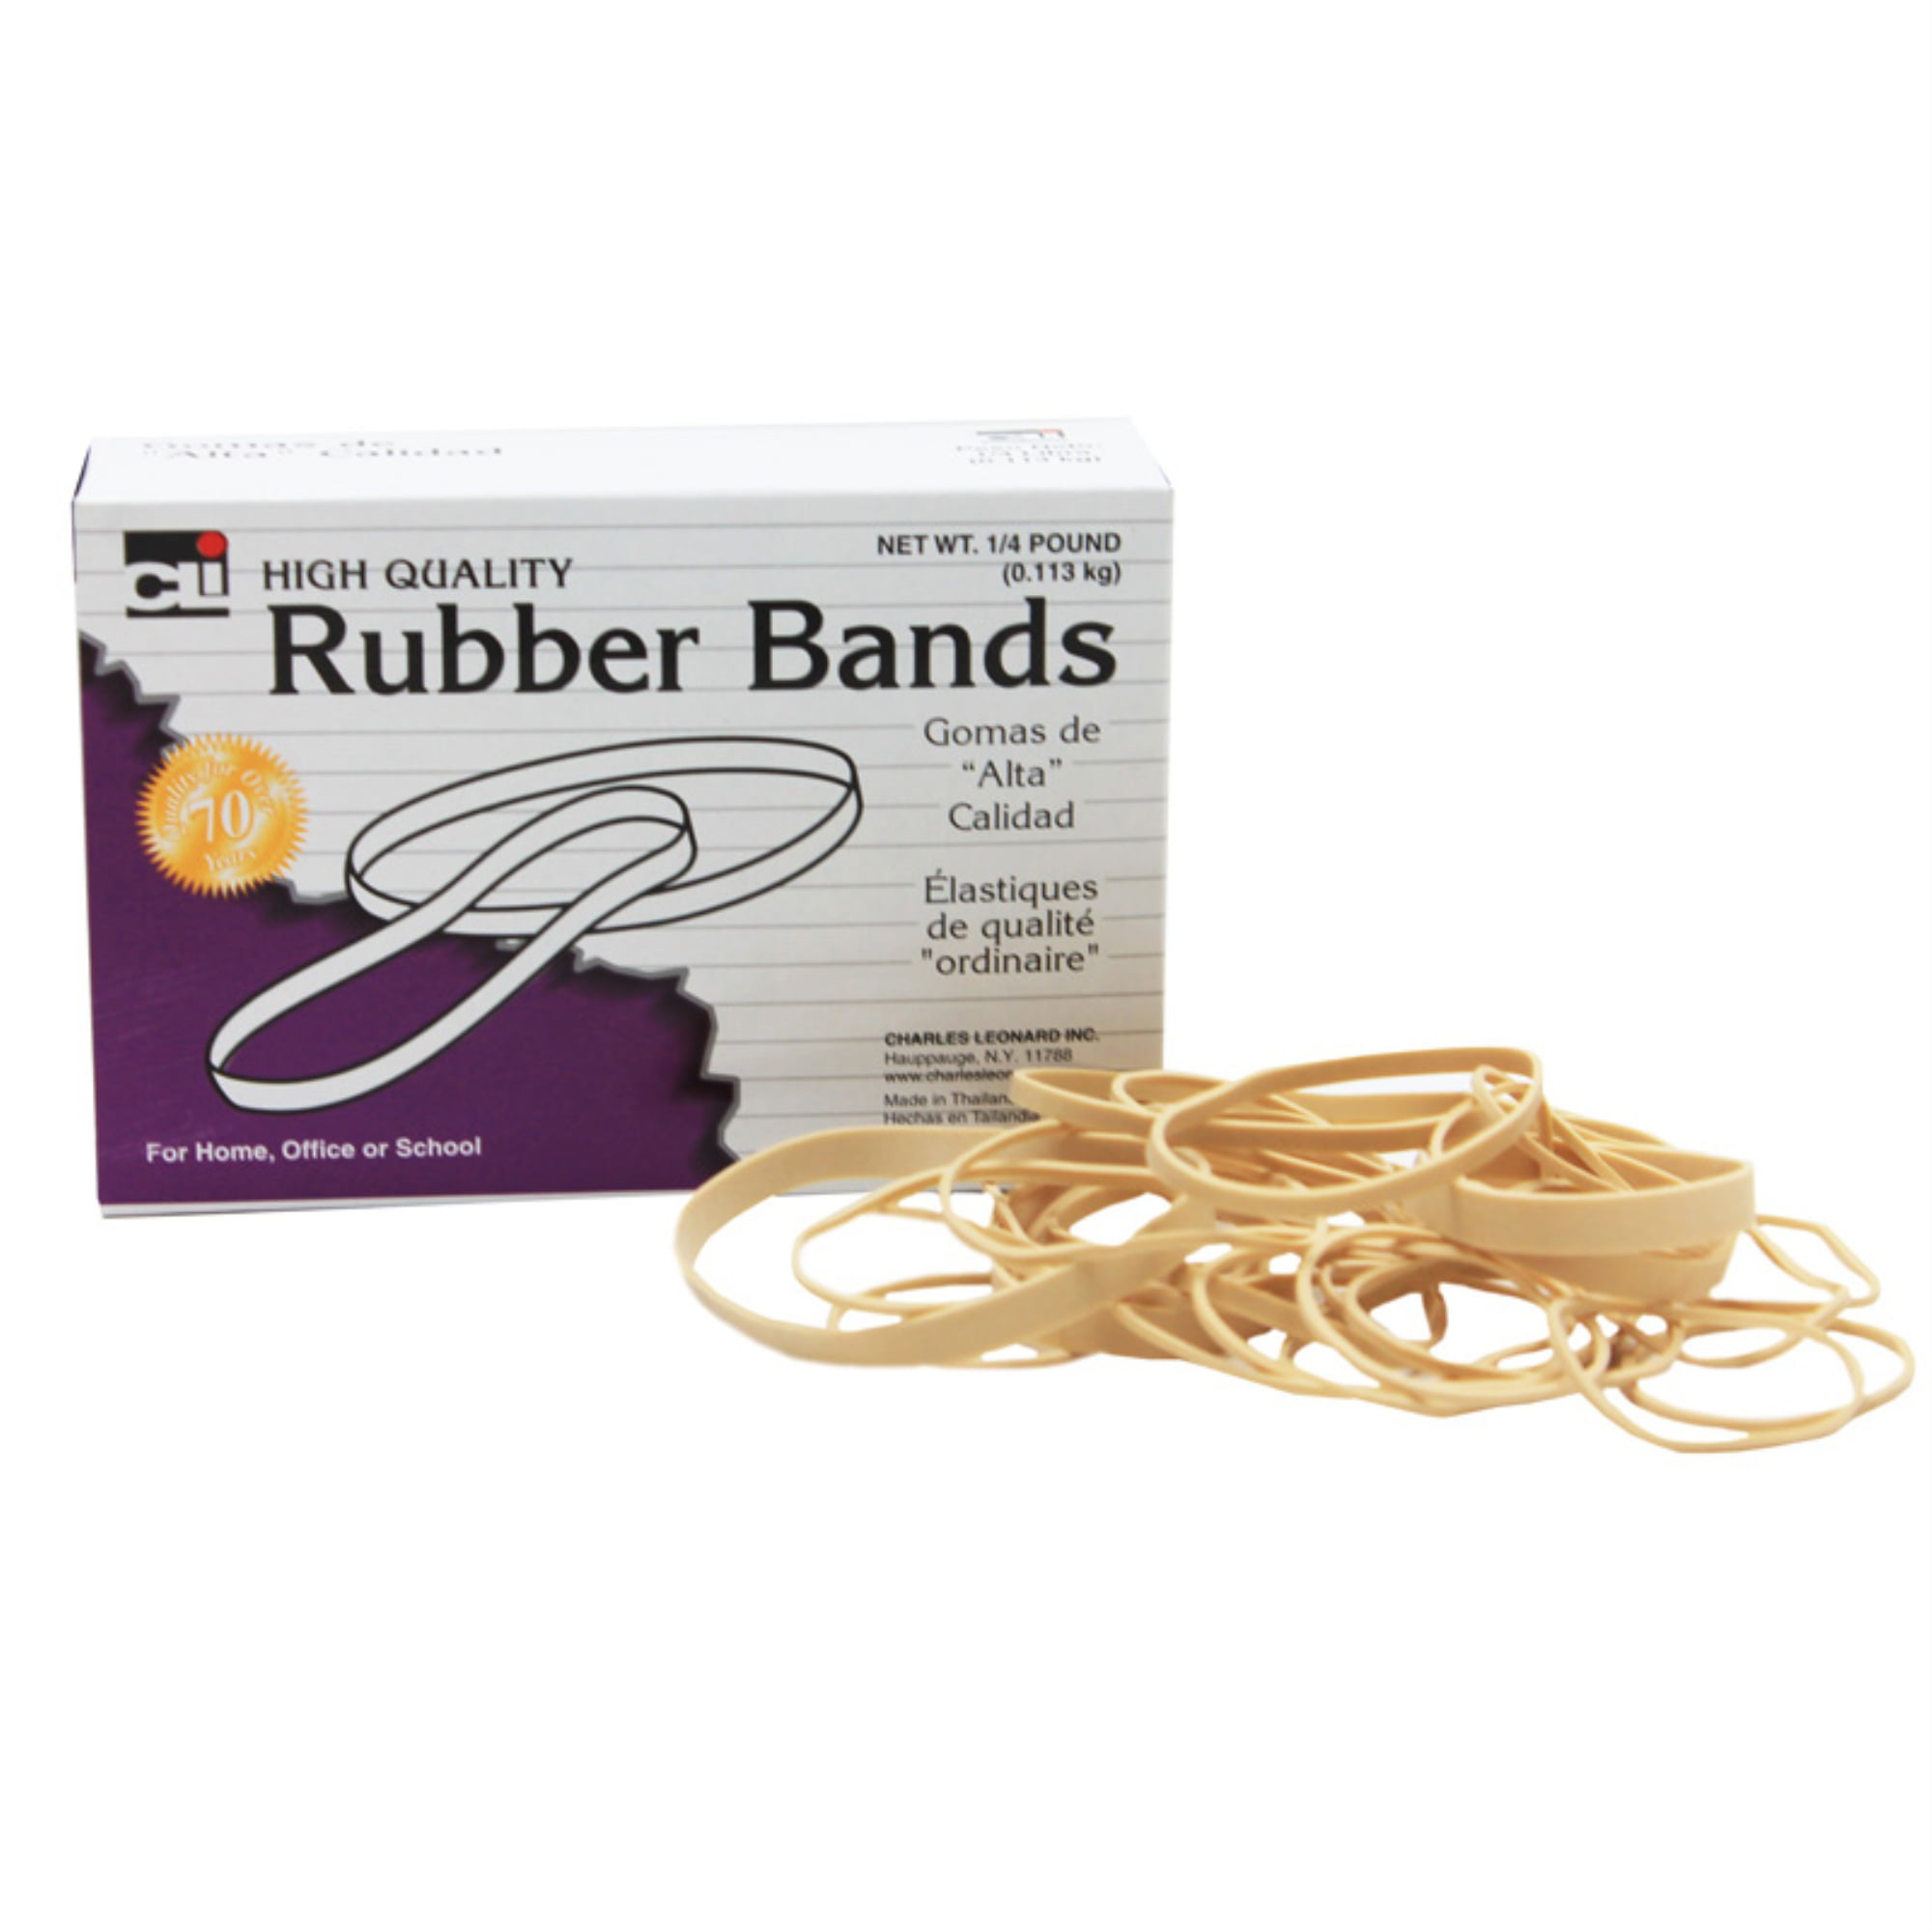 1-3.8 oz Bag Charles Leonard Rubber Bands Natural Color